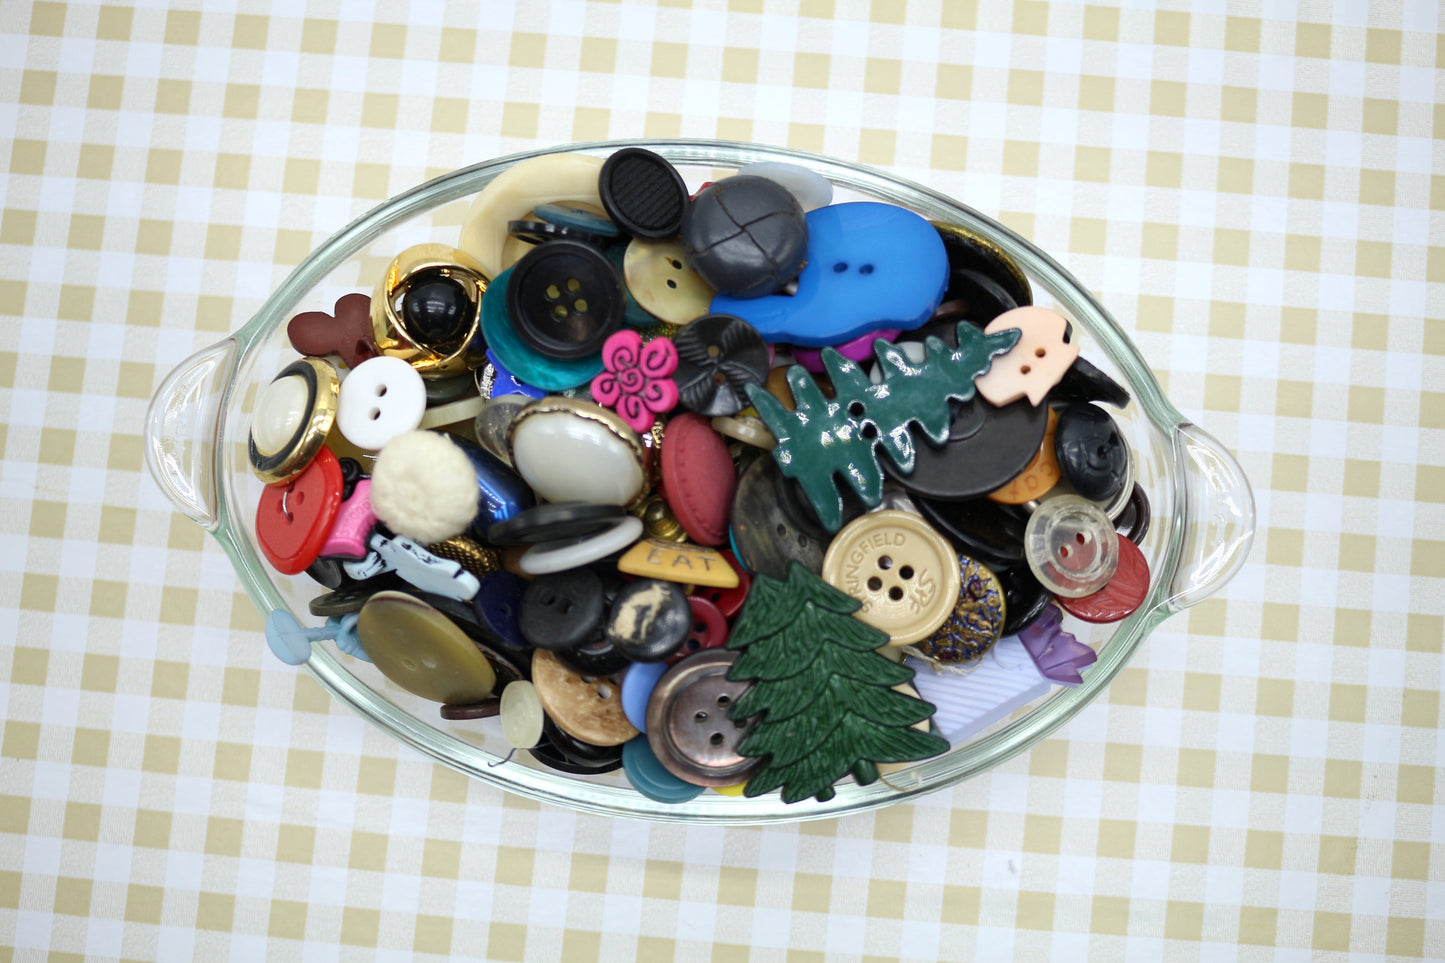 Bulk Button Scoop, Bulk Buttons, Vintage Buttons, Collage Art, Junk Journal, Scrapbooking